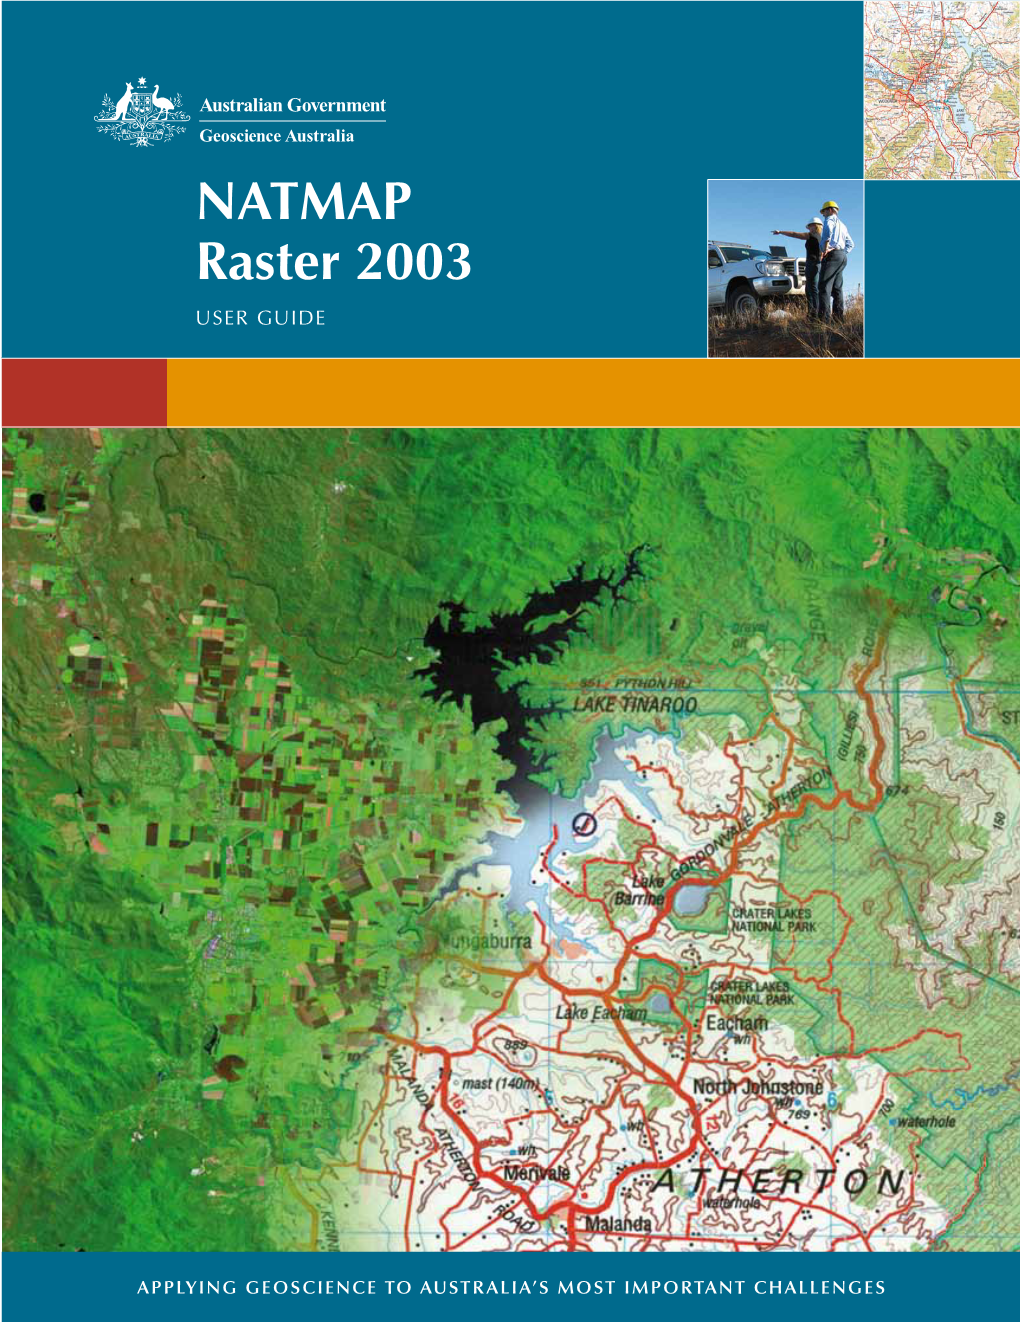 NATMAP Raster 2003 User Guide